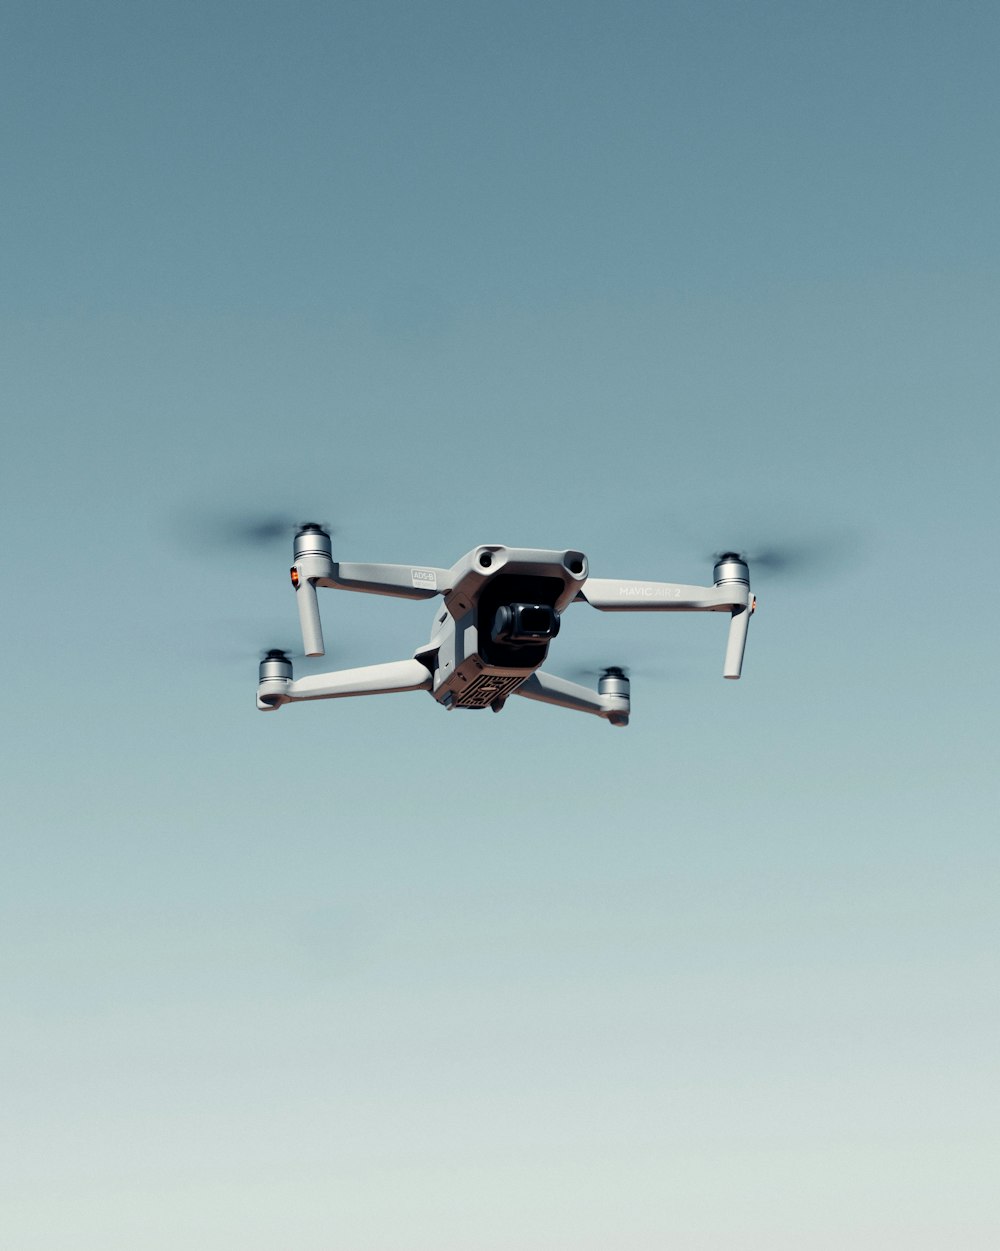 dron blanco y negro volando bajo el cielo azul durante el día